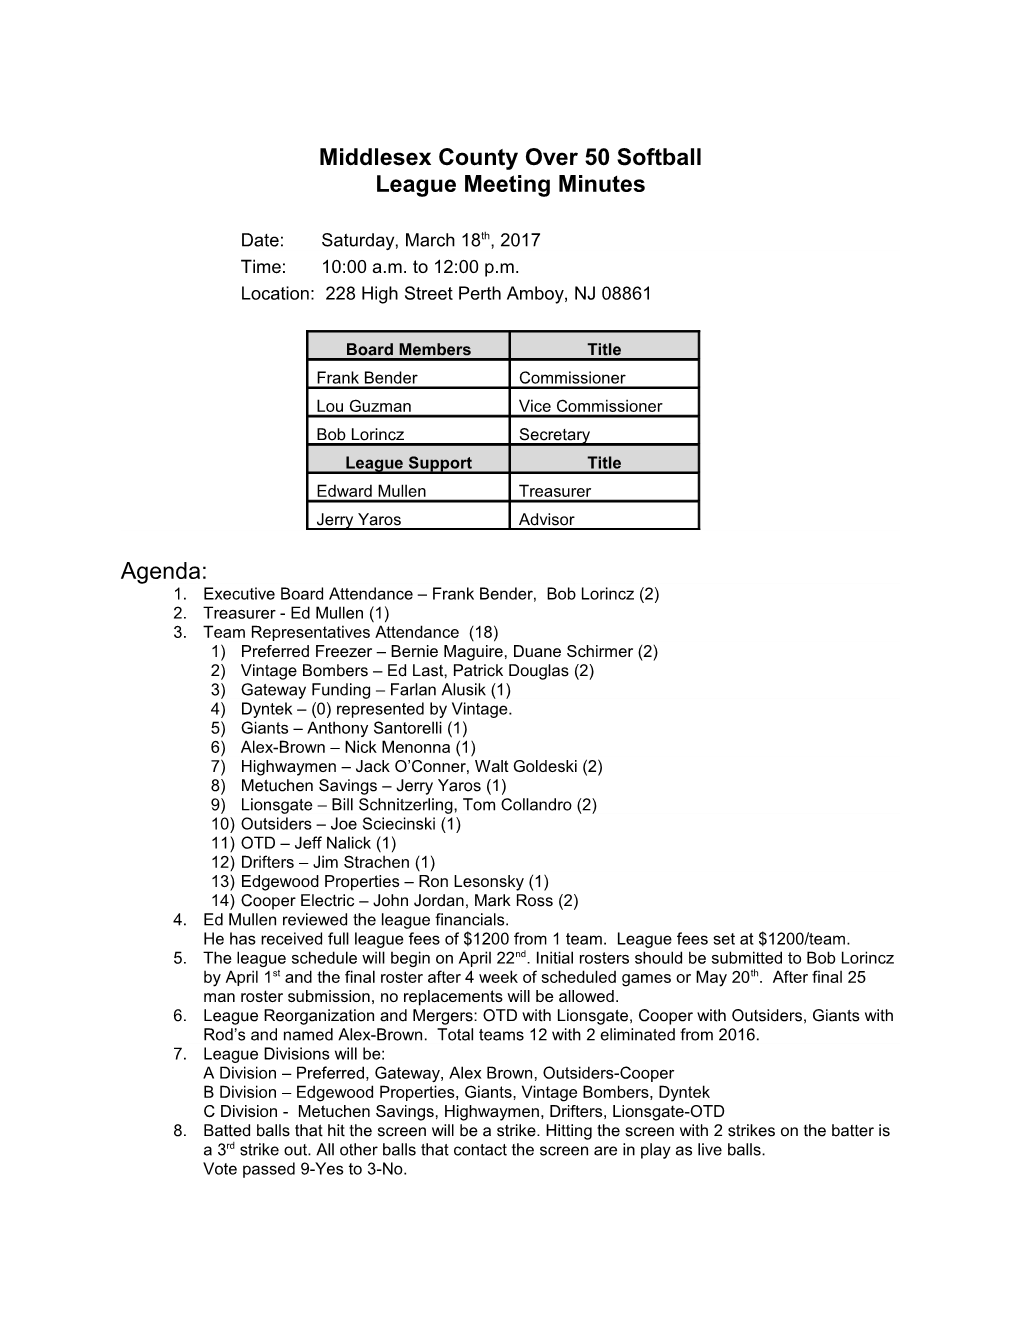 MCSSL 50'S Feb 11,2017 Meeting Minutes